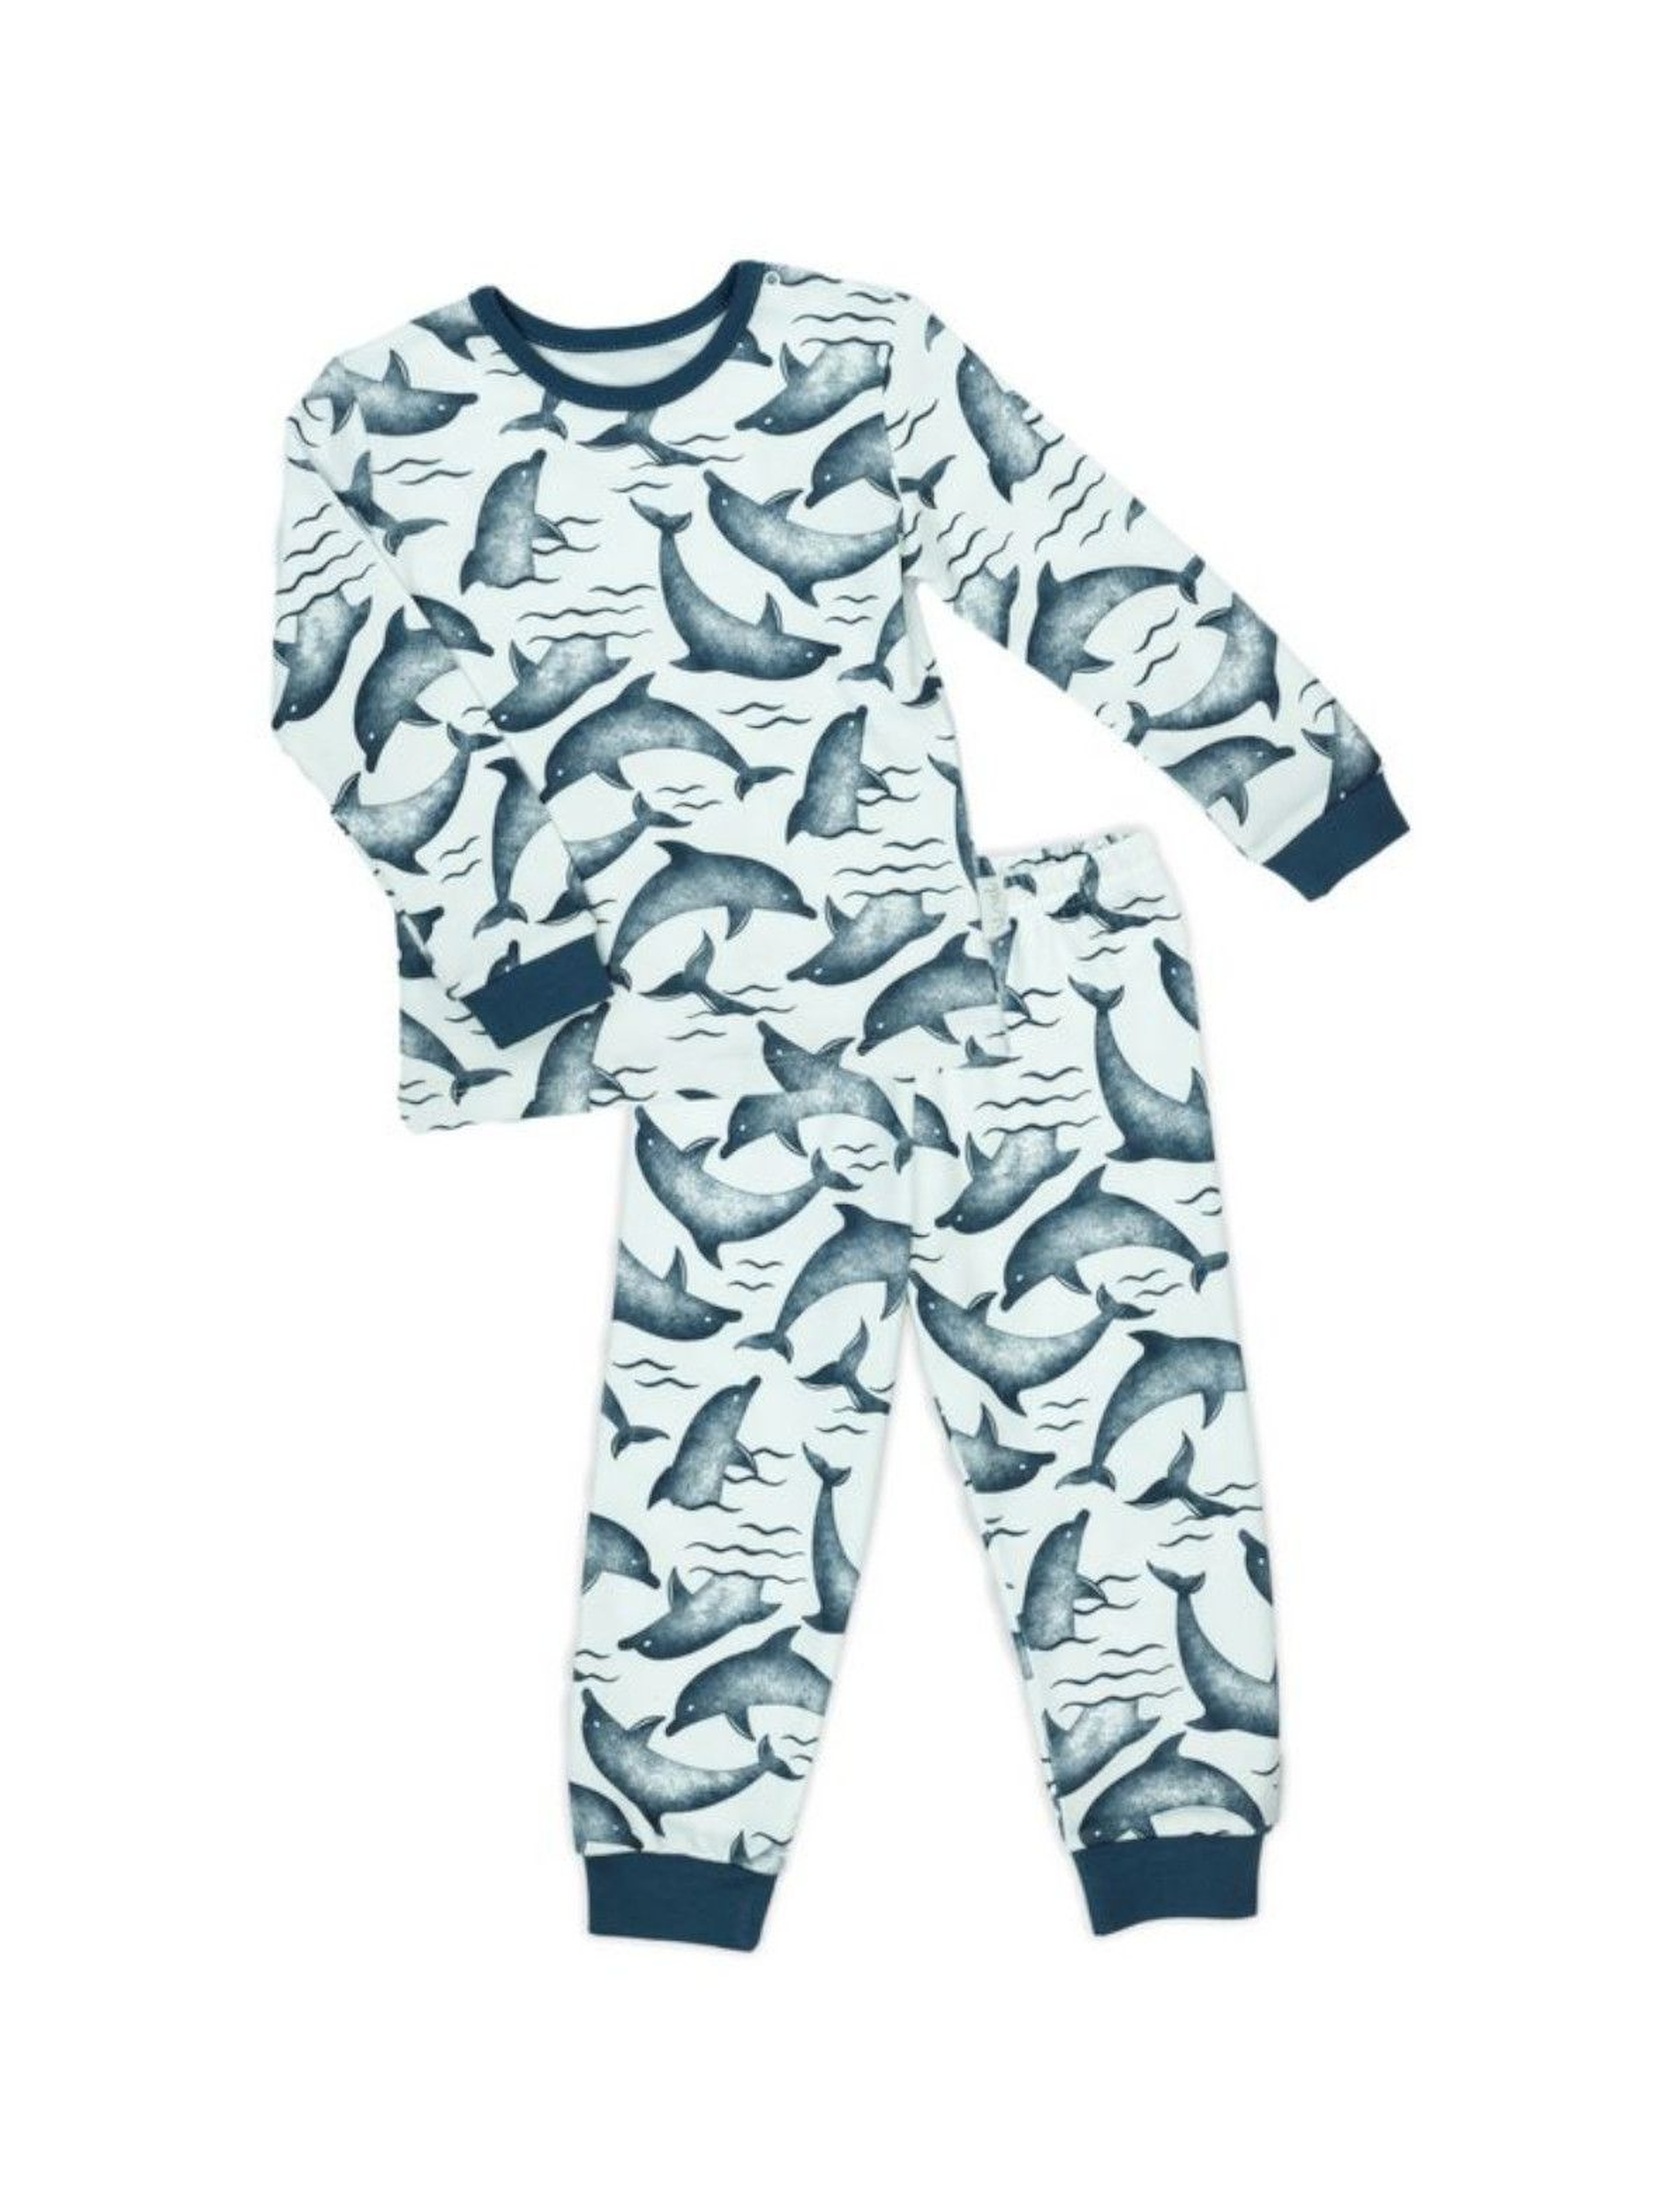 Piżamka dla chłopca w kolorze białym z motywem delfinów